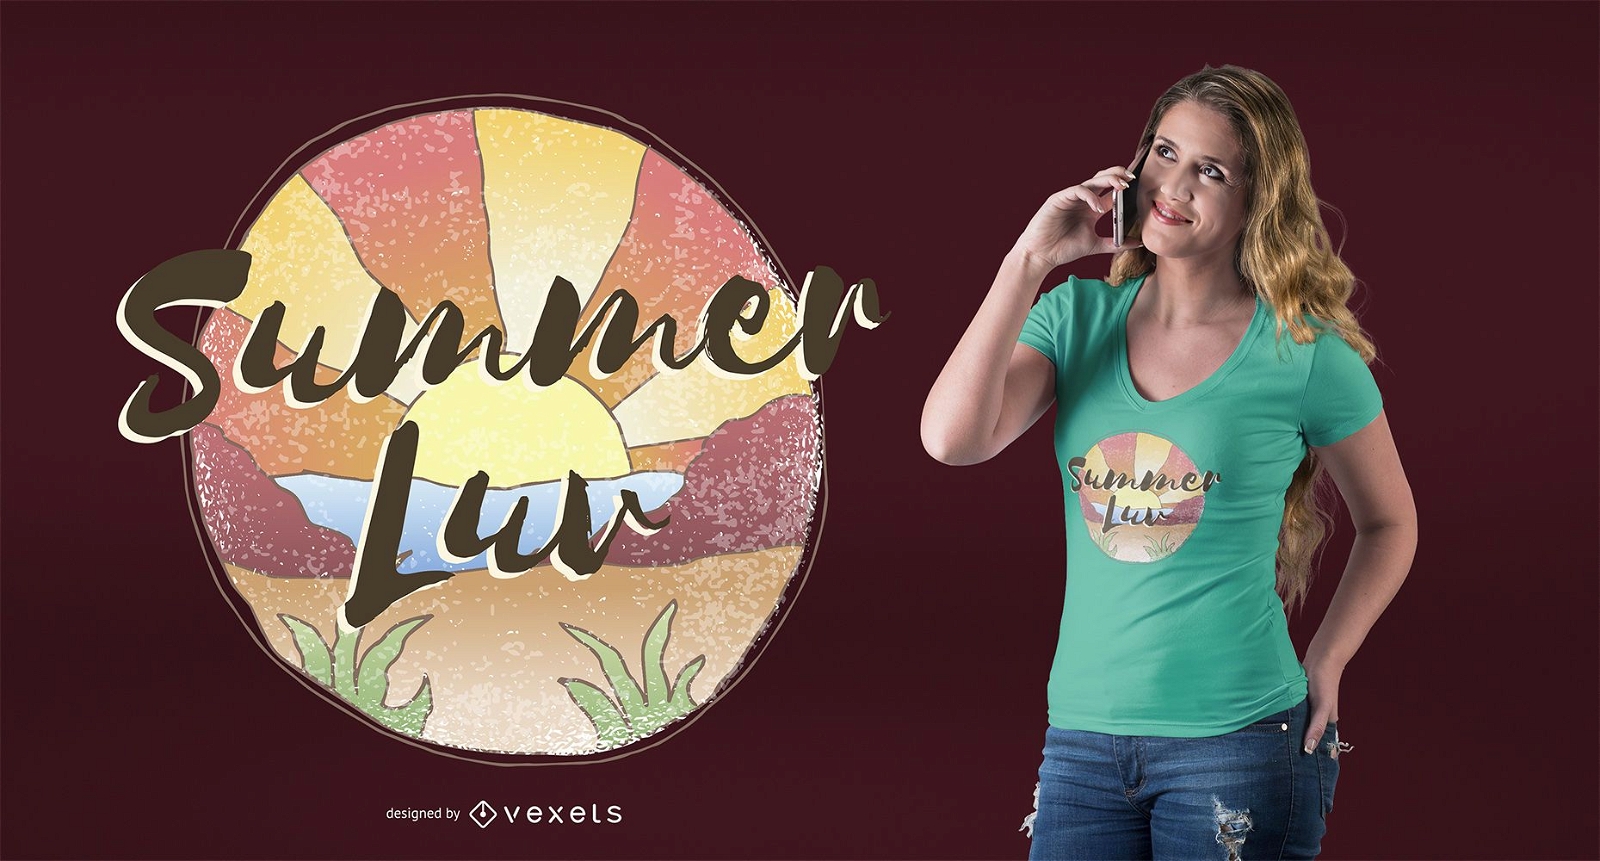 Summer love t-shirt design